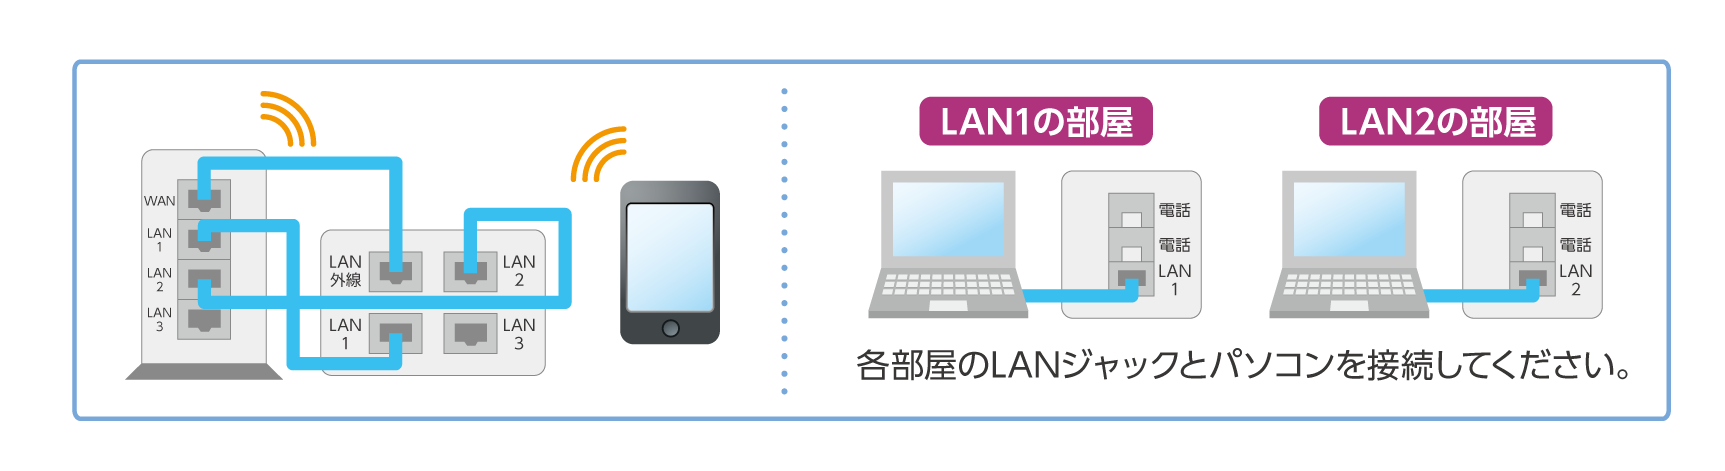 パッチパネルのLAN外線と、ルータのWANを接続し、ご利用になりたい部屋のLANジャックとルータのLANを接続してください。各部屋のLANジャックとパソコンを接続してください。